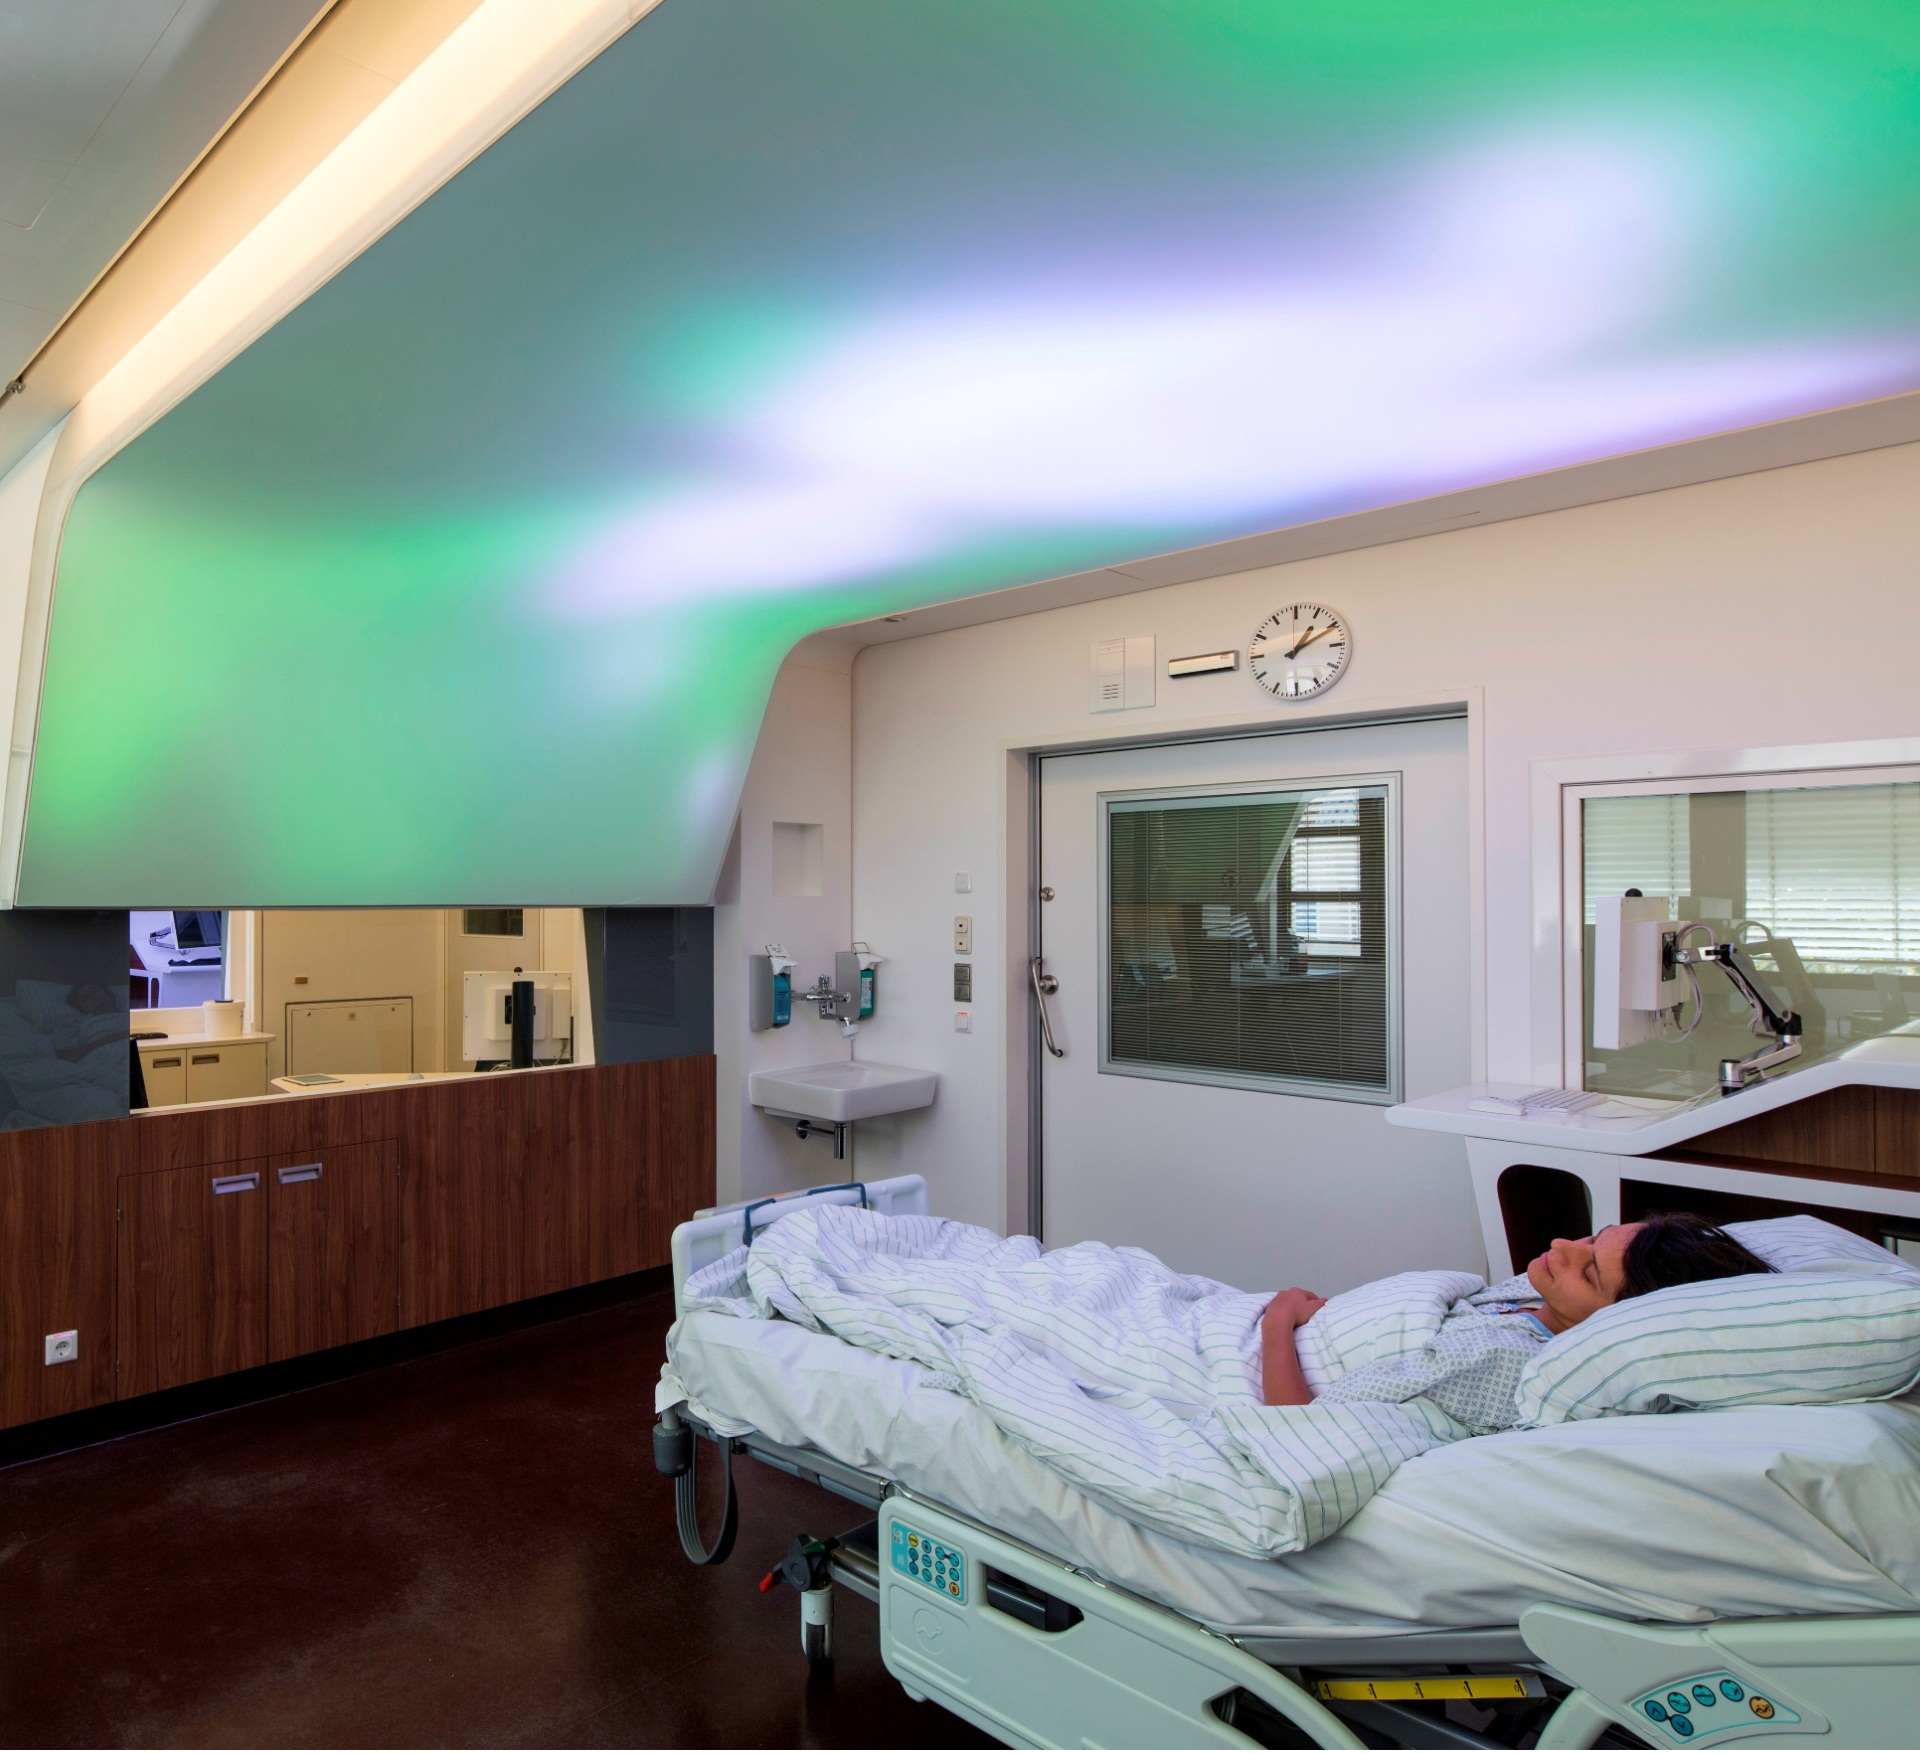 https://www.klusdesign.com/blog/wp-content/uploads/2013/11/LED-Light-In-Hospital.jpg